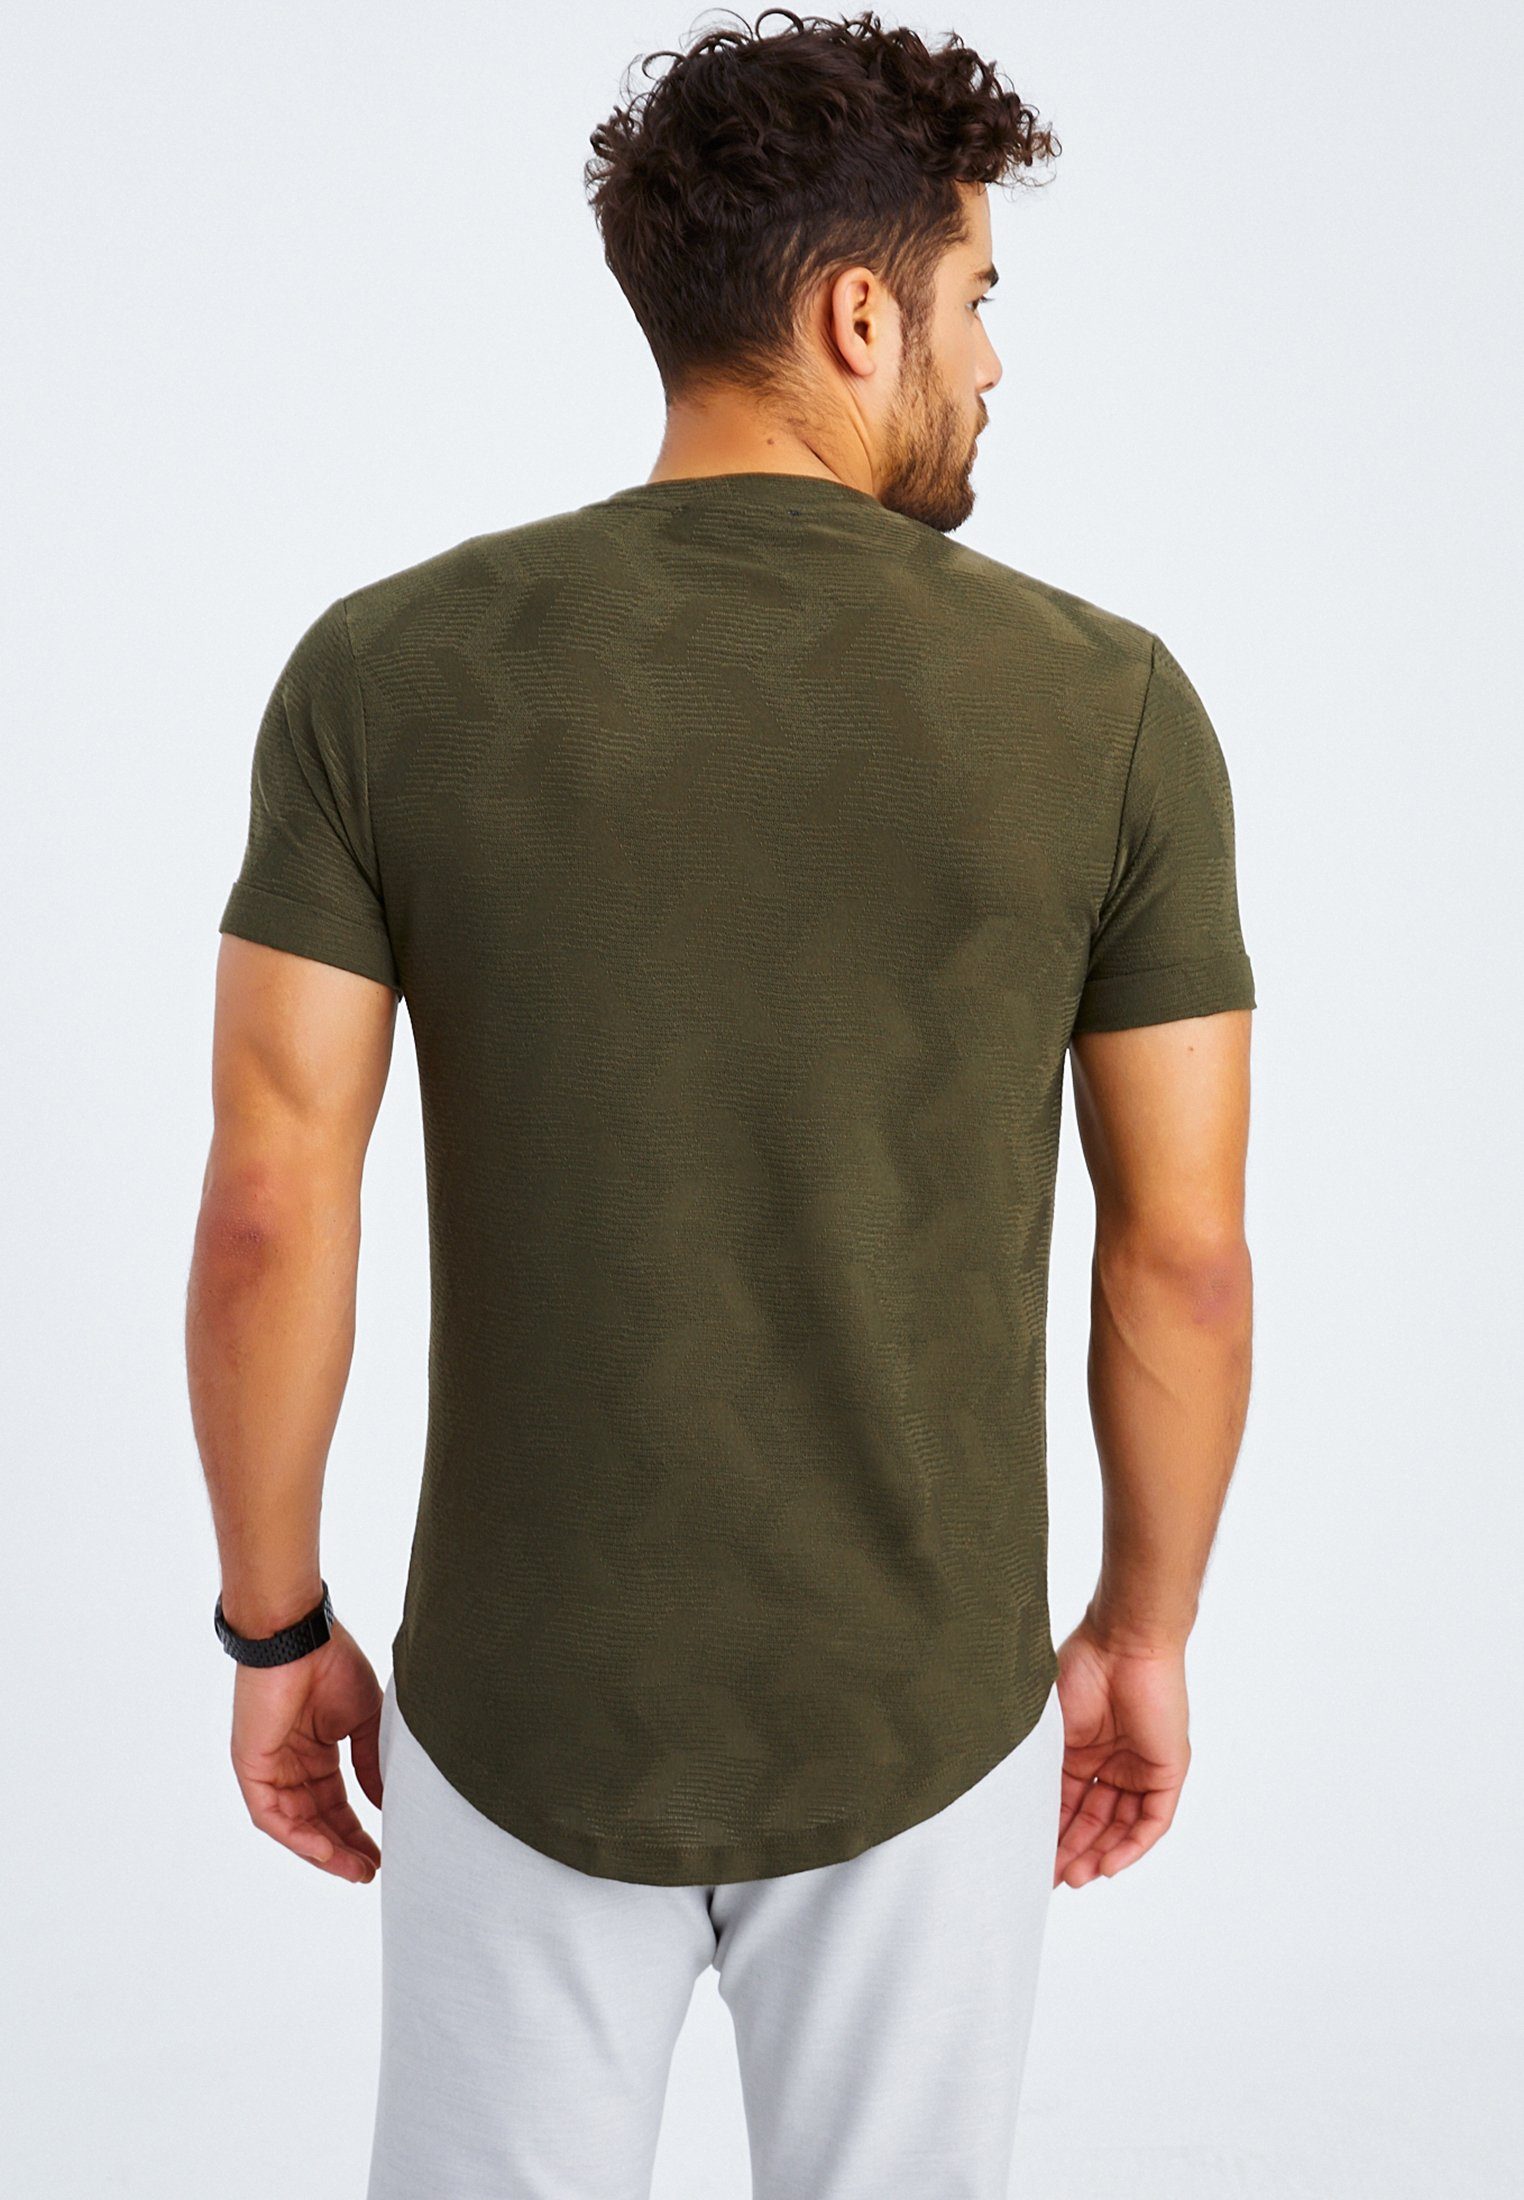 Leif Nelson T-Shirt khaki Herren normal LN-55585 T-Shirt Rundhals